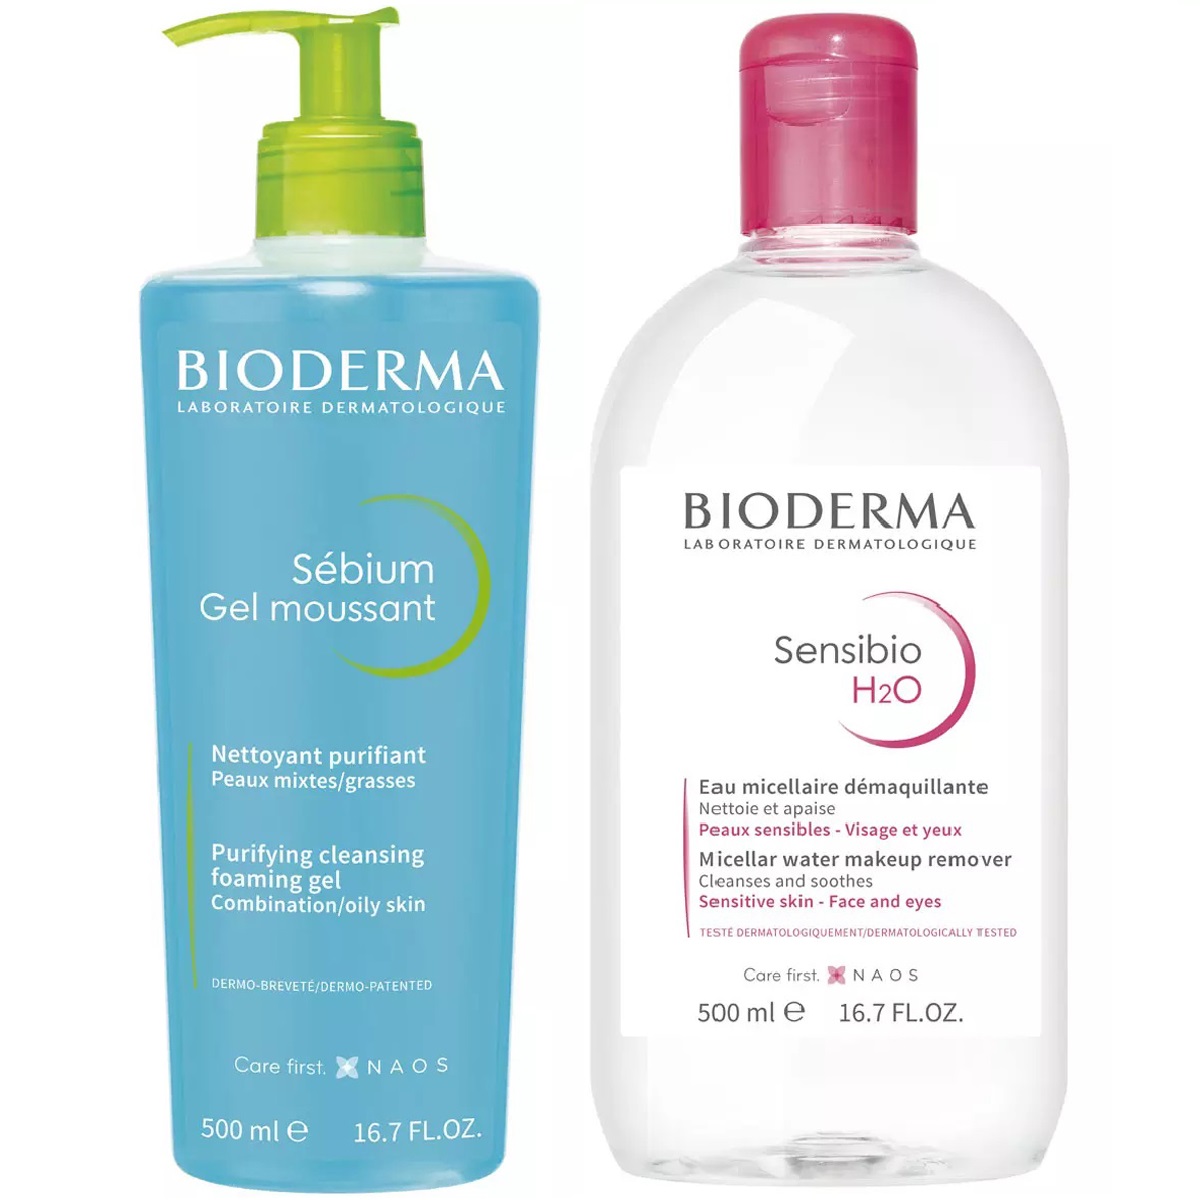 Bioderma Набор для очищения жирной кожи: гель, 500 мл + мицеллярная вода, 500 мл (Bioderma, Sebium) bioderma набор очищающий гель 500 мл мицеллярная вода 500 мл bioderma sebium